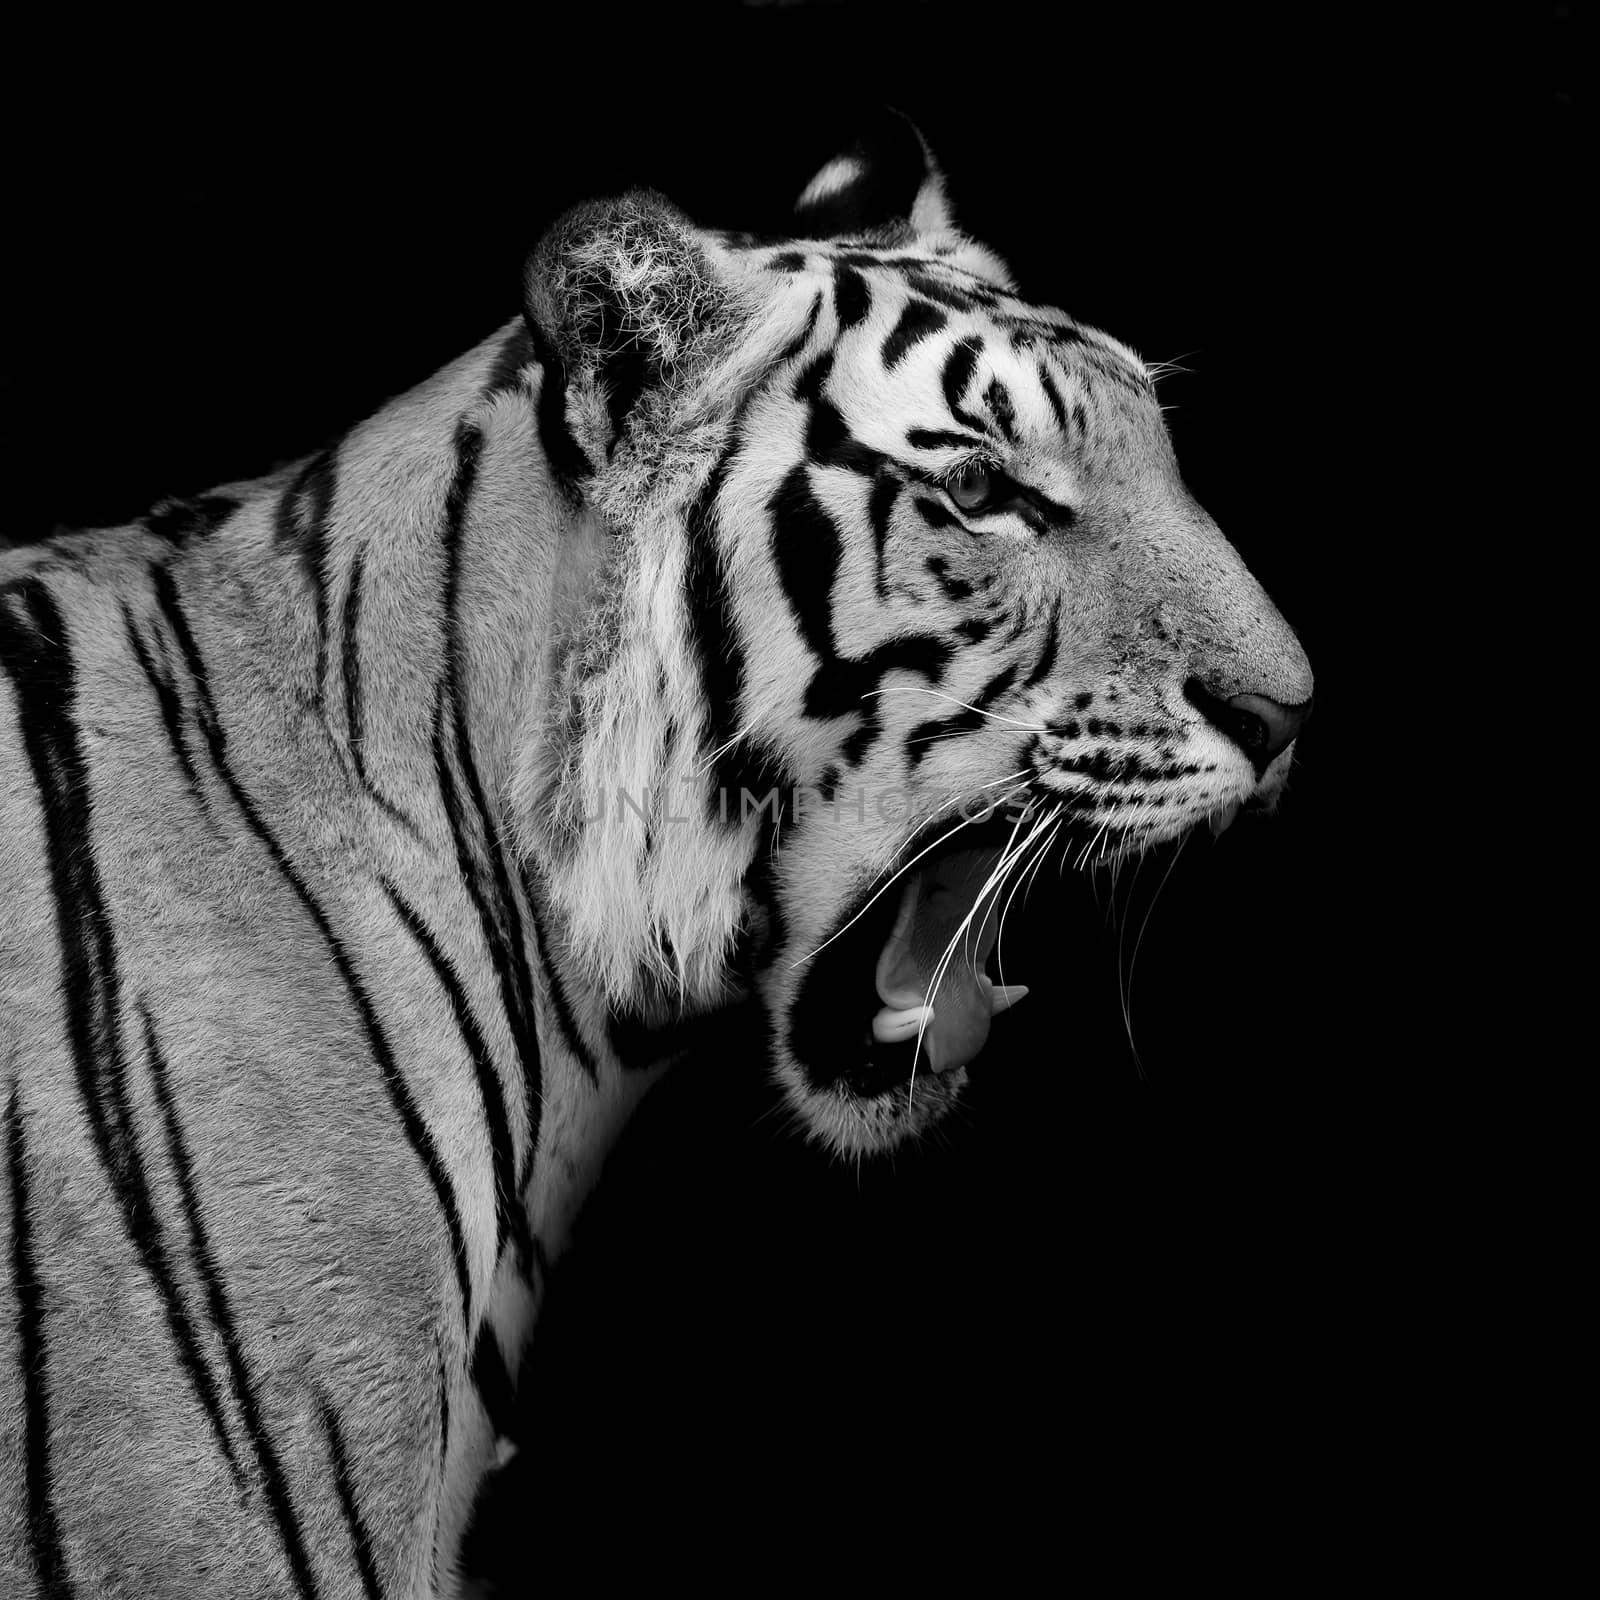 Black & White Tiger by art9858